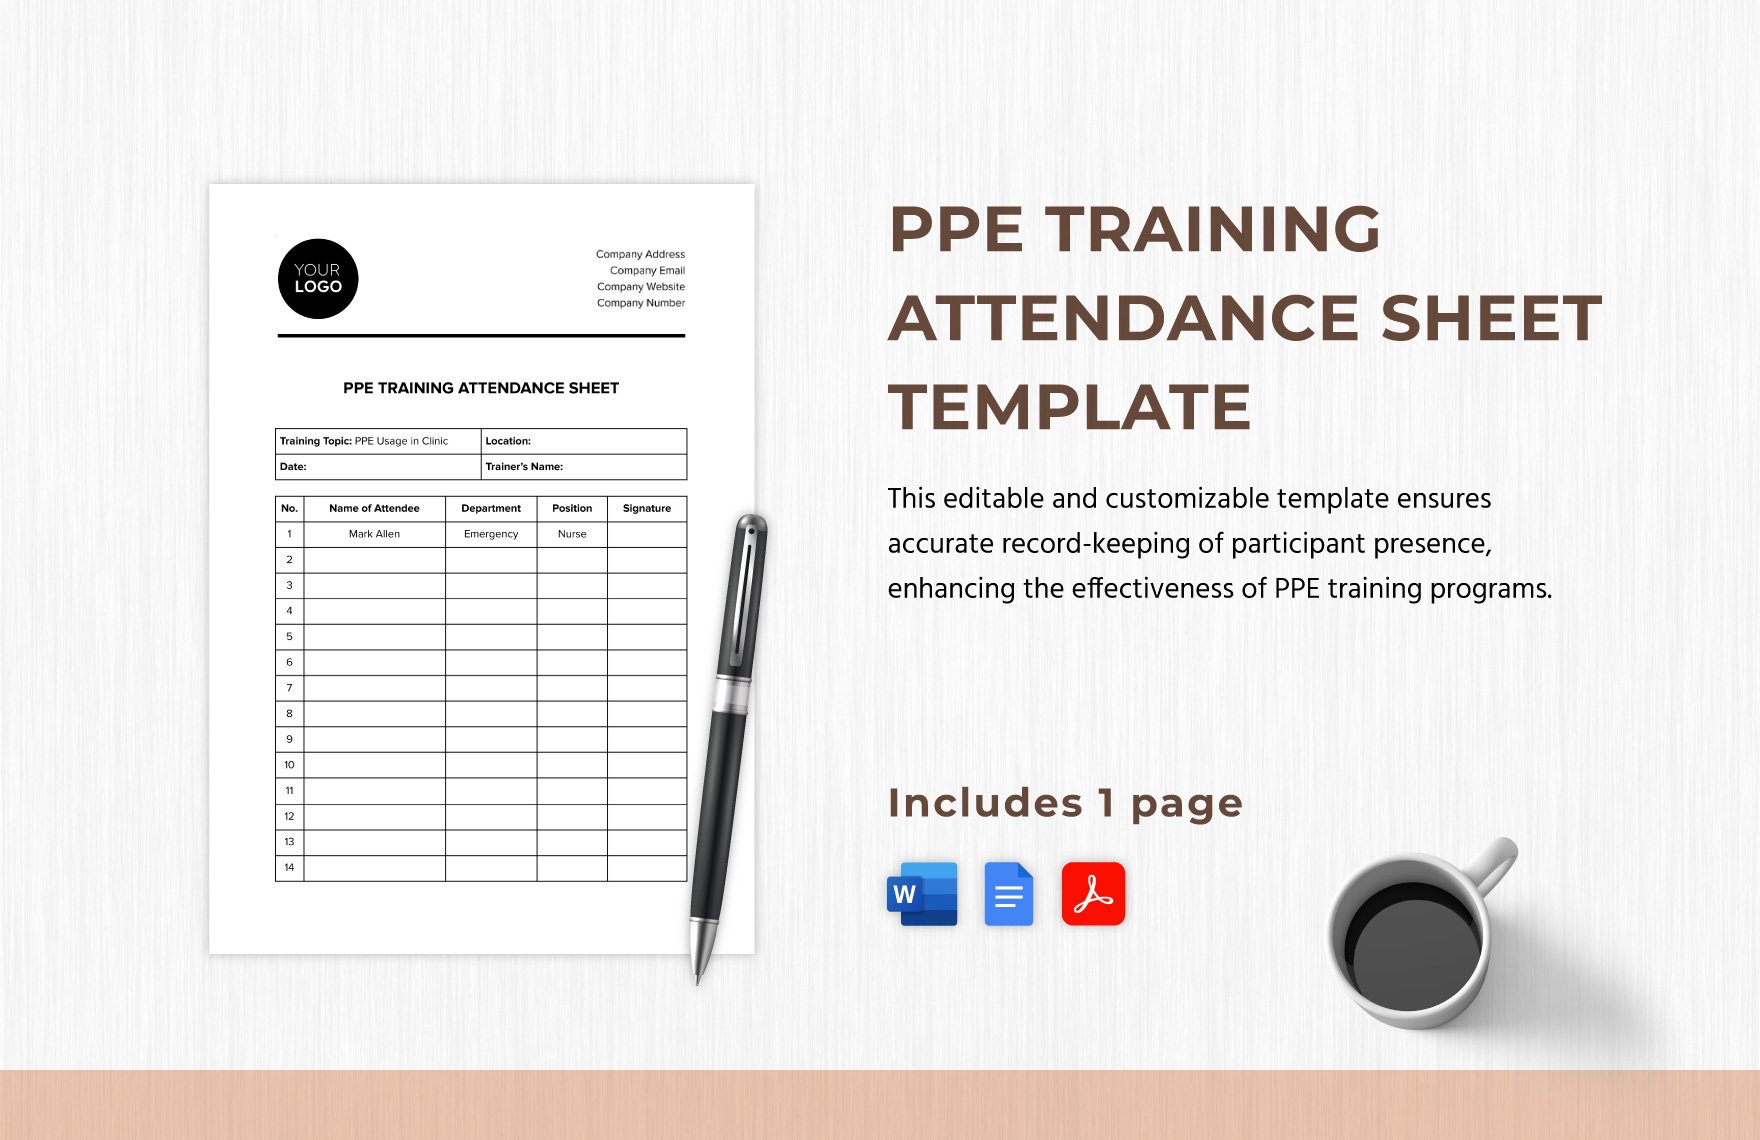 PPE Training Attendance Sheet Template